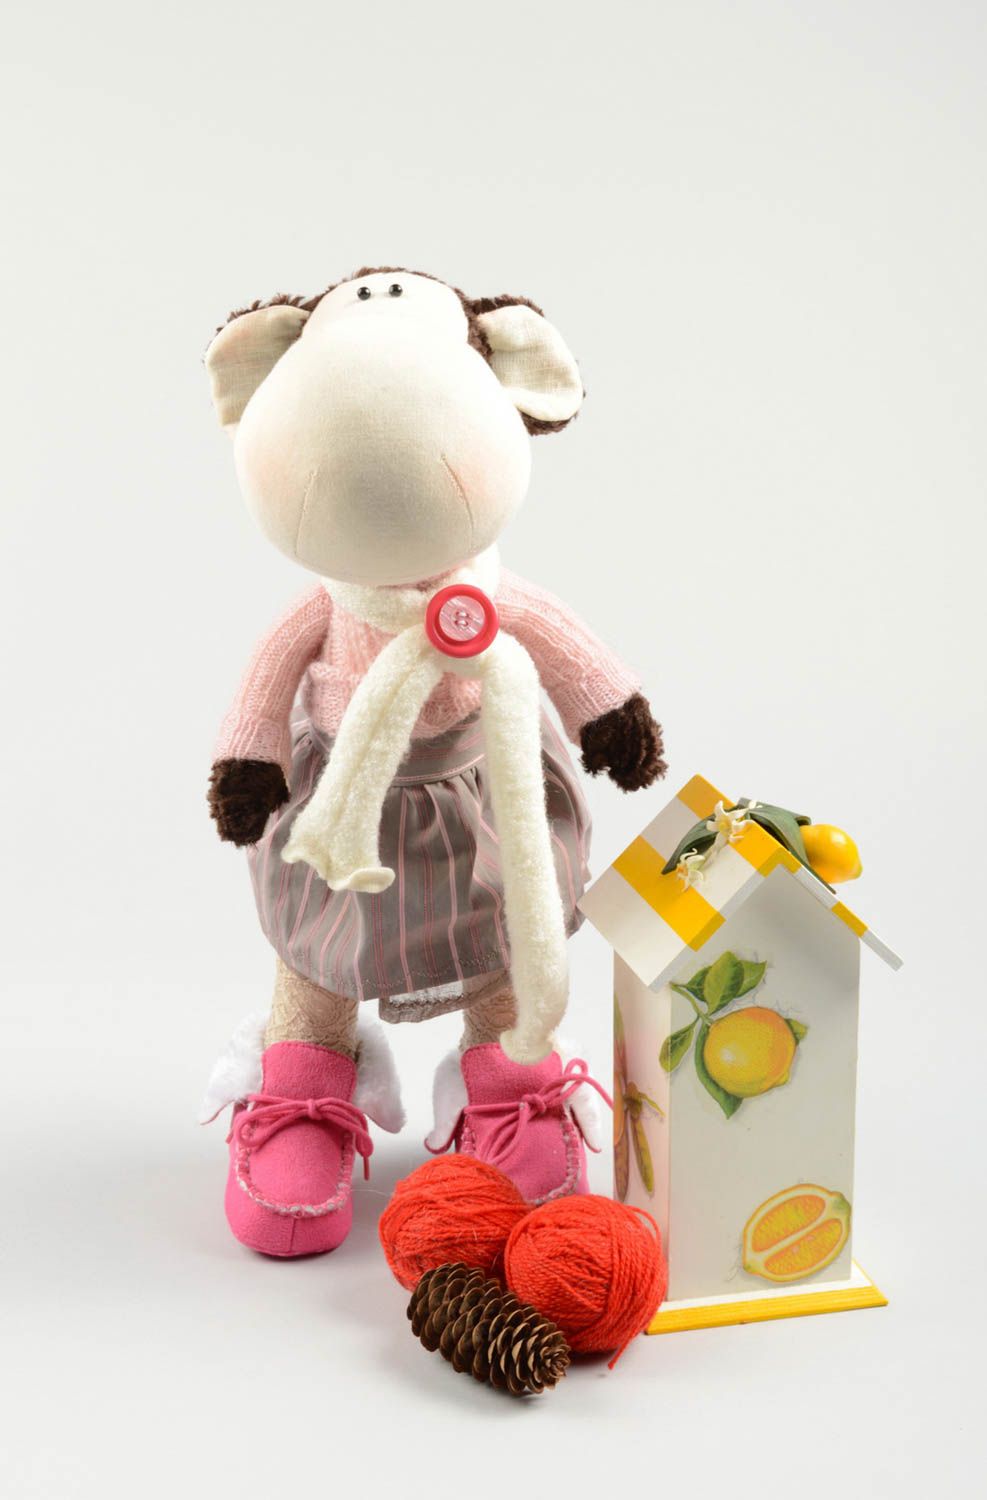 Muñeco artesanal juguete original elemento decorativo monito vestido alegre foto 5